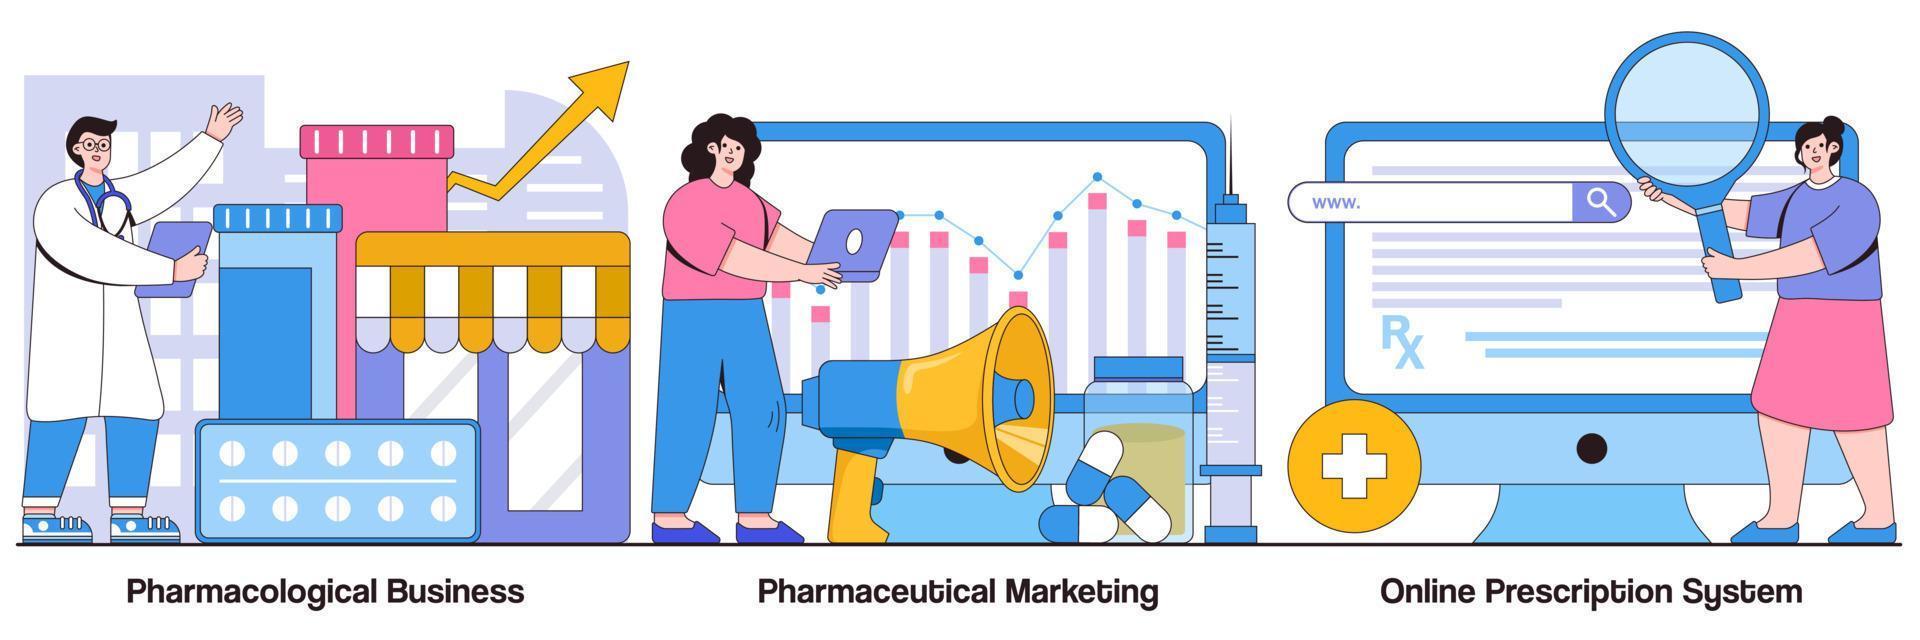 Pacchetto illustrato per attività di farmacologia, marketing farmaceutico e sistema di prescrizione online vettore